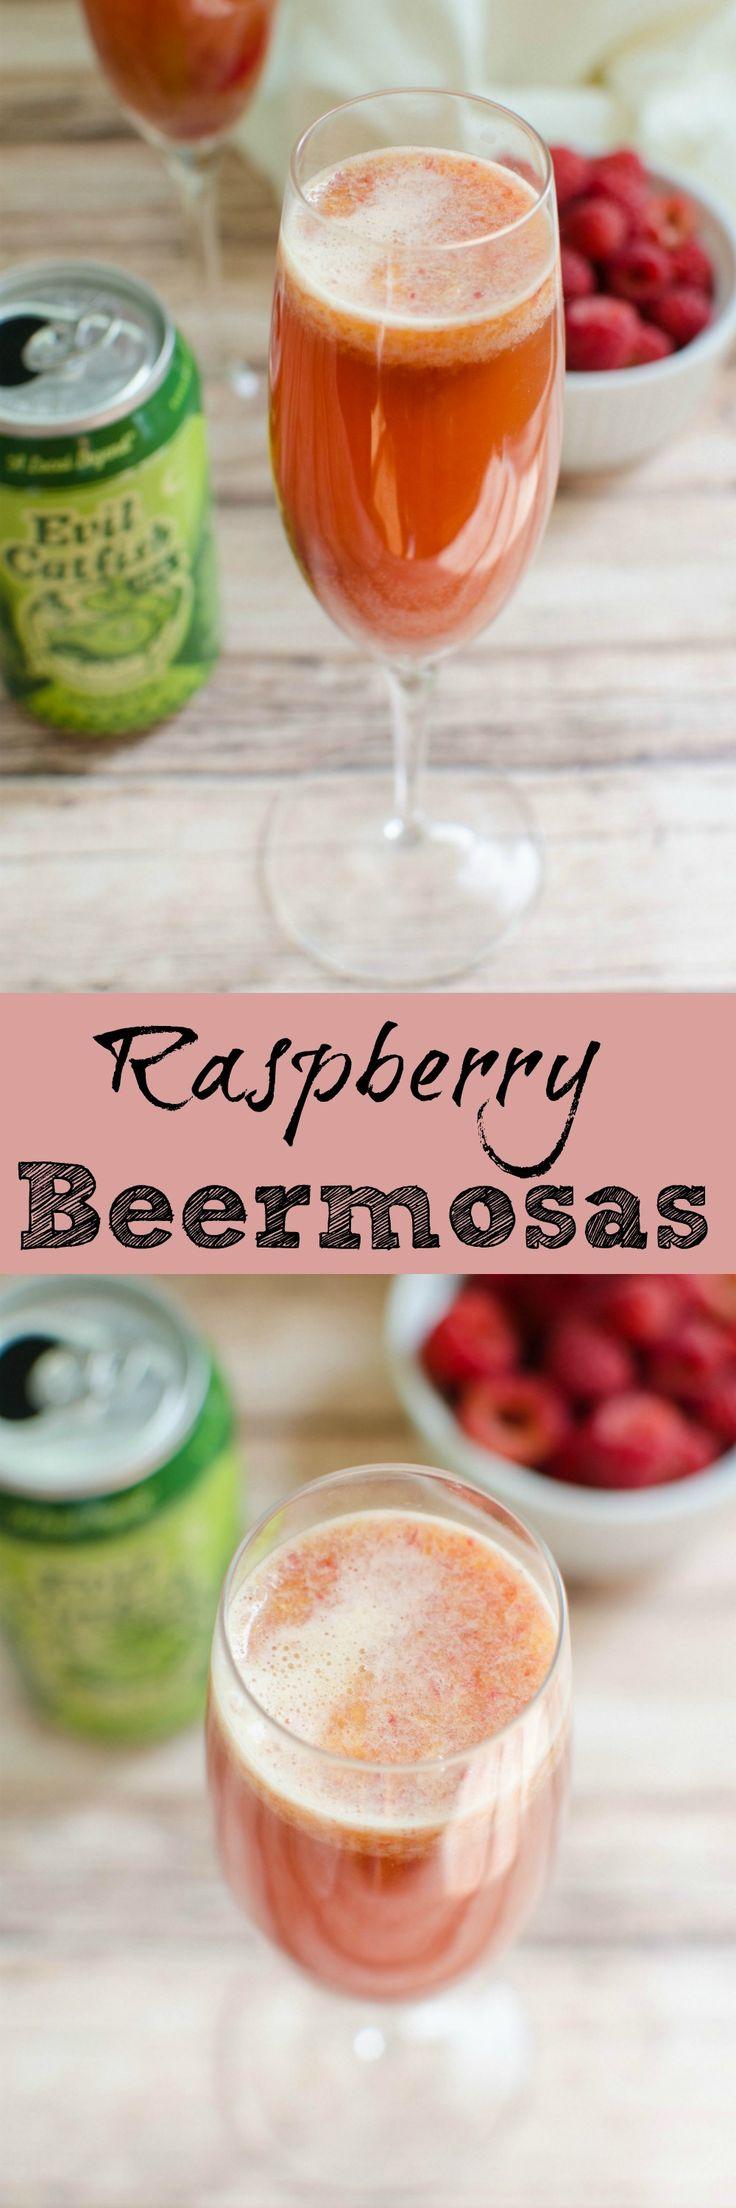 Hochzeit - Raspberry Beermosas